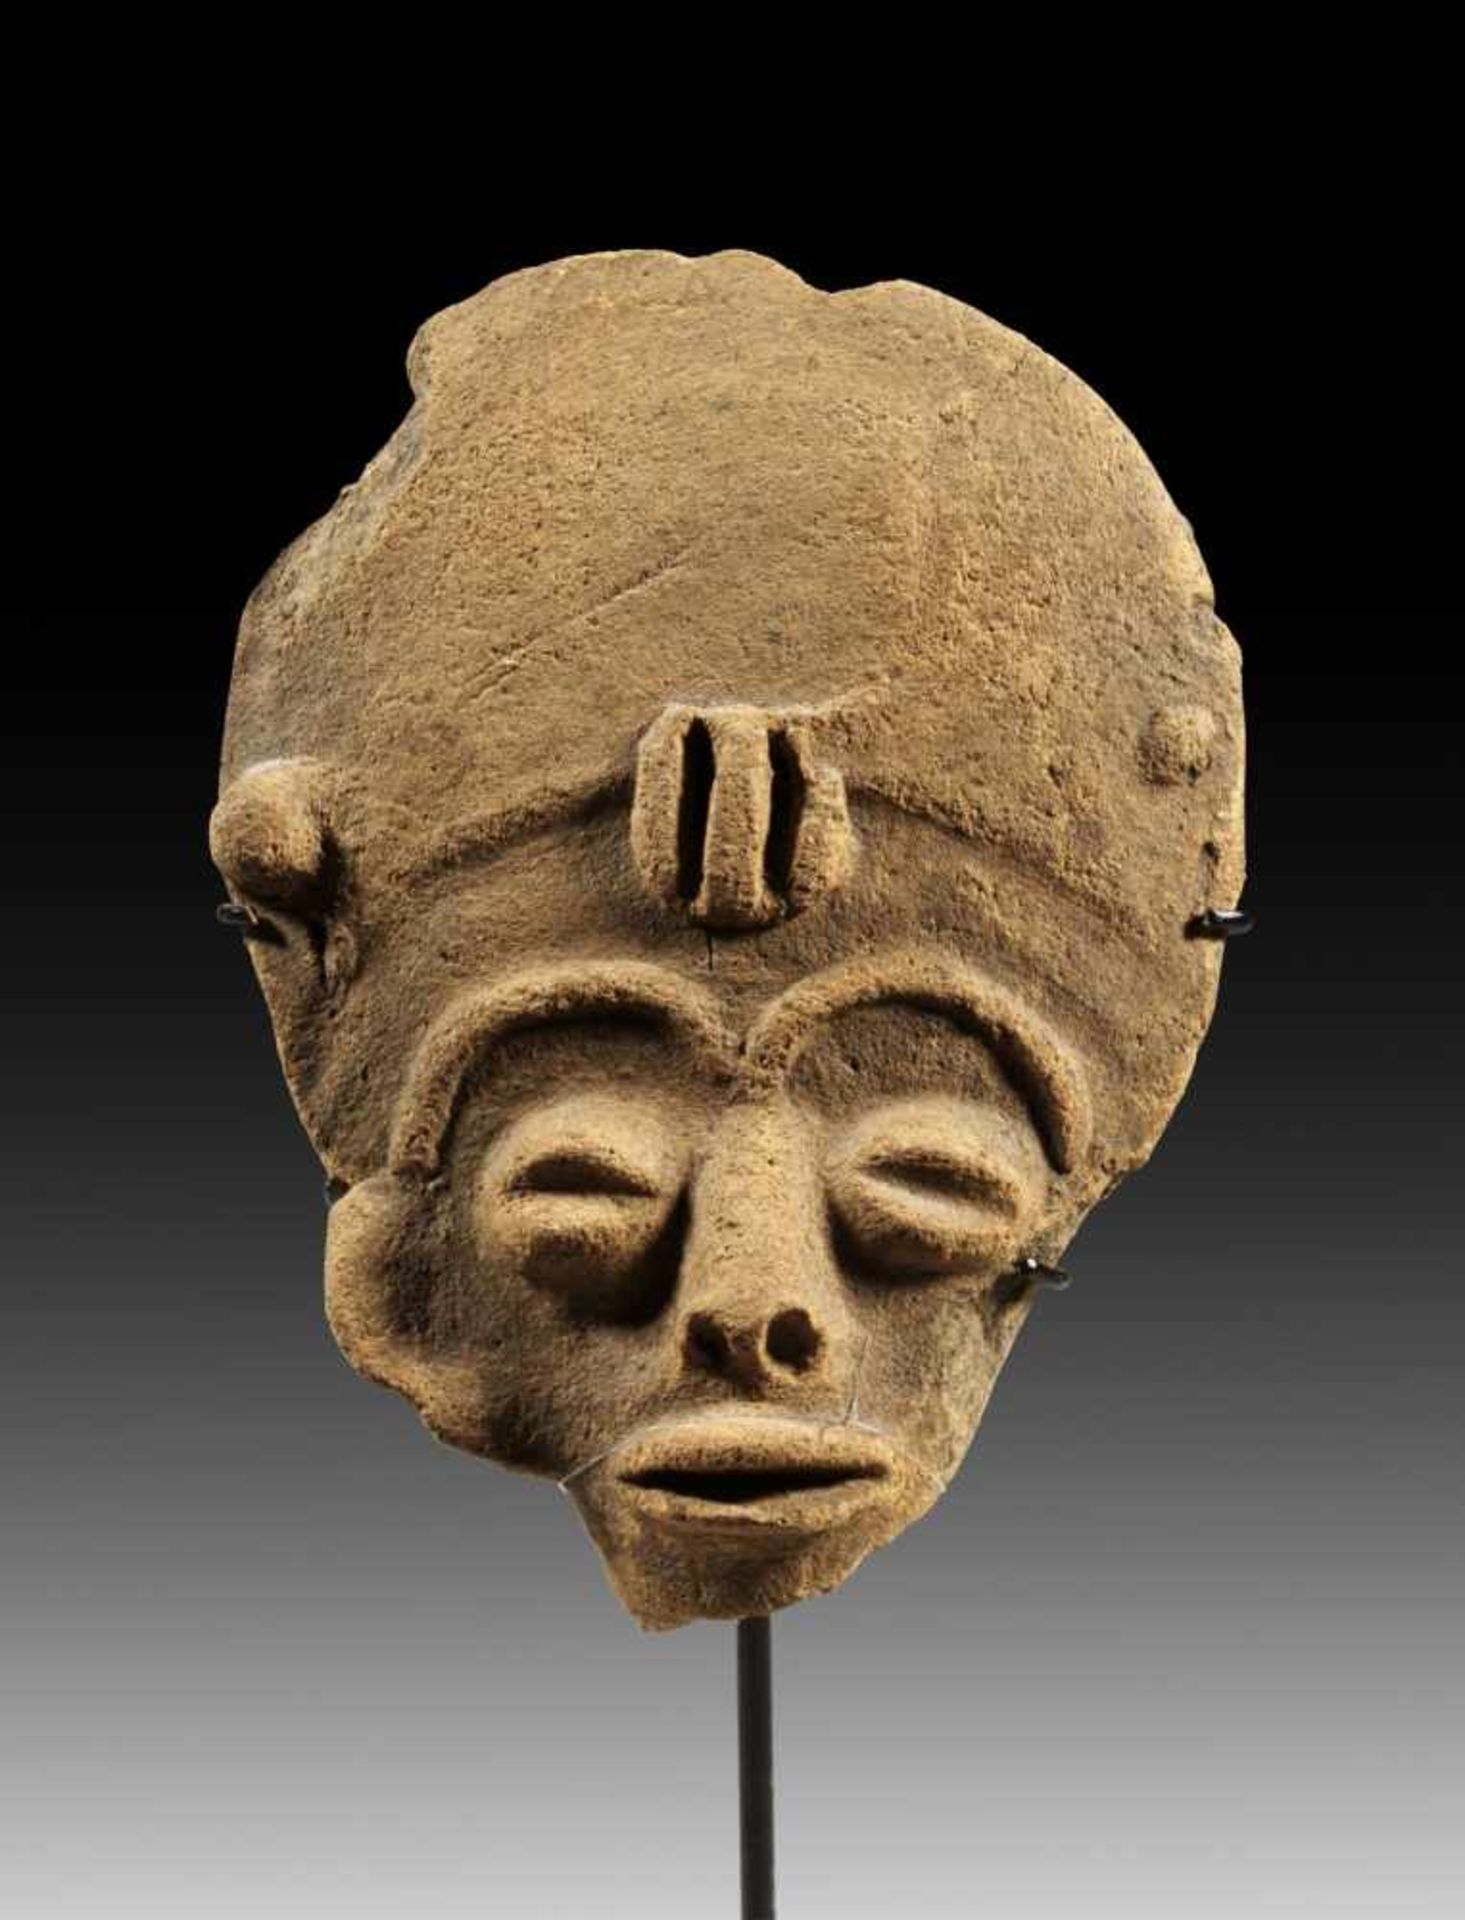 Kleiner Gedenkkopf aus Terrakotta. Akan, vermutlich aus Hemang-Twifo, Ghana, 18. - 19. Jh. H 12cm.